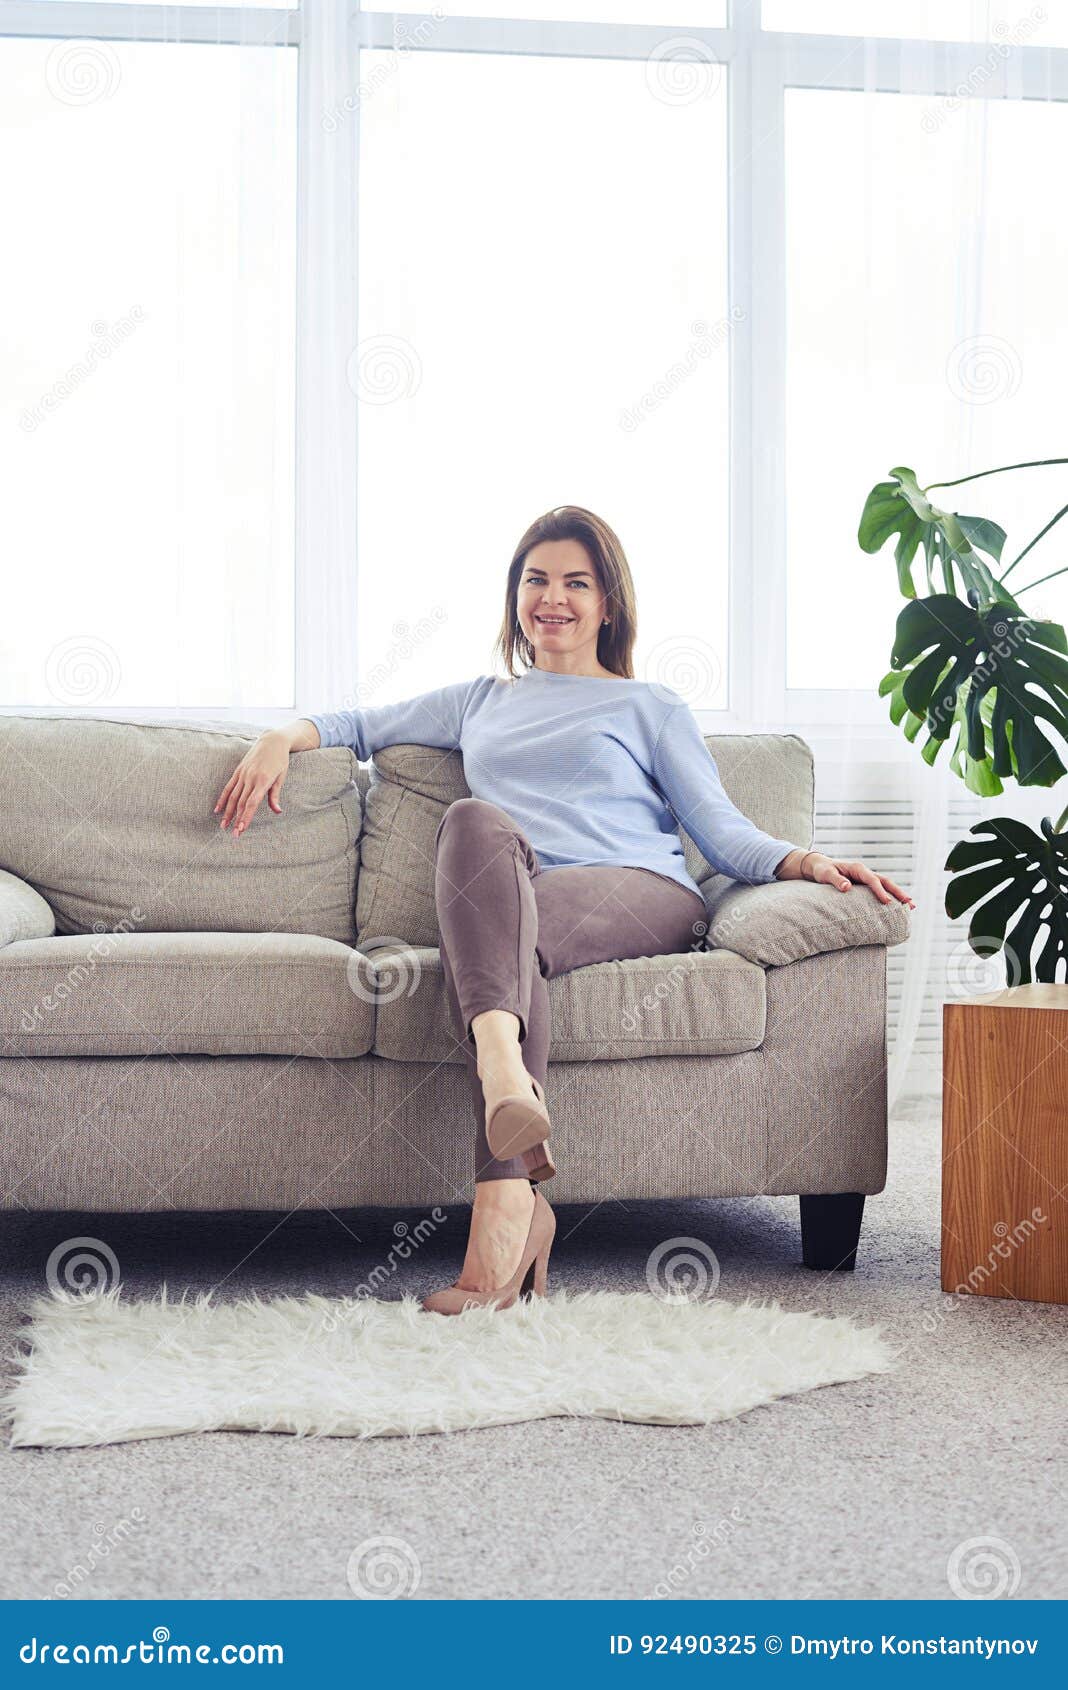 Зрелые расслабились. Он в диване дышит. Woman sit on Sofa PNG.